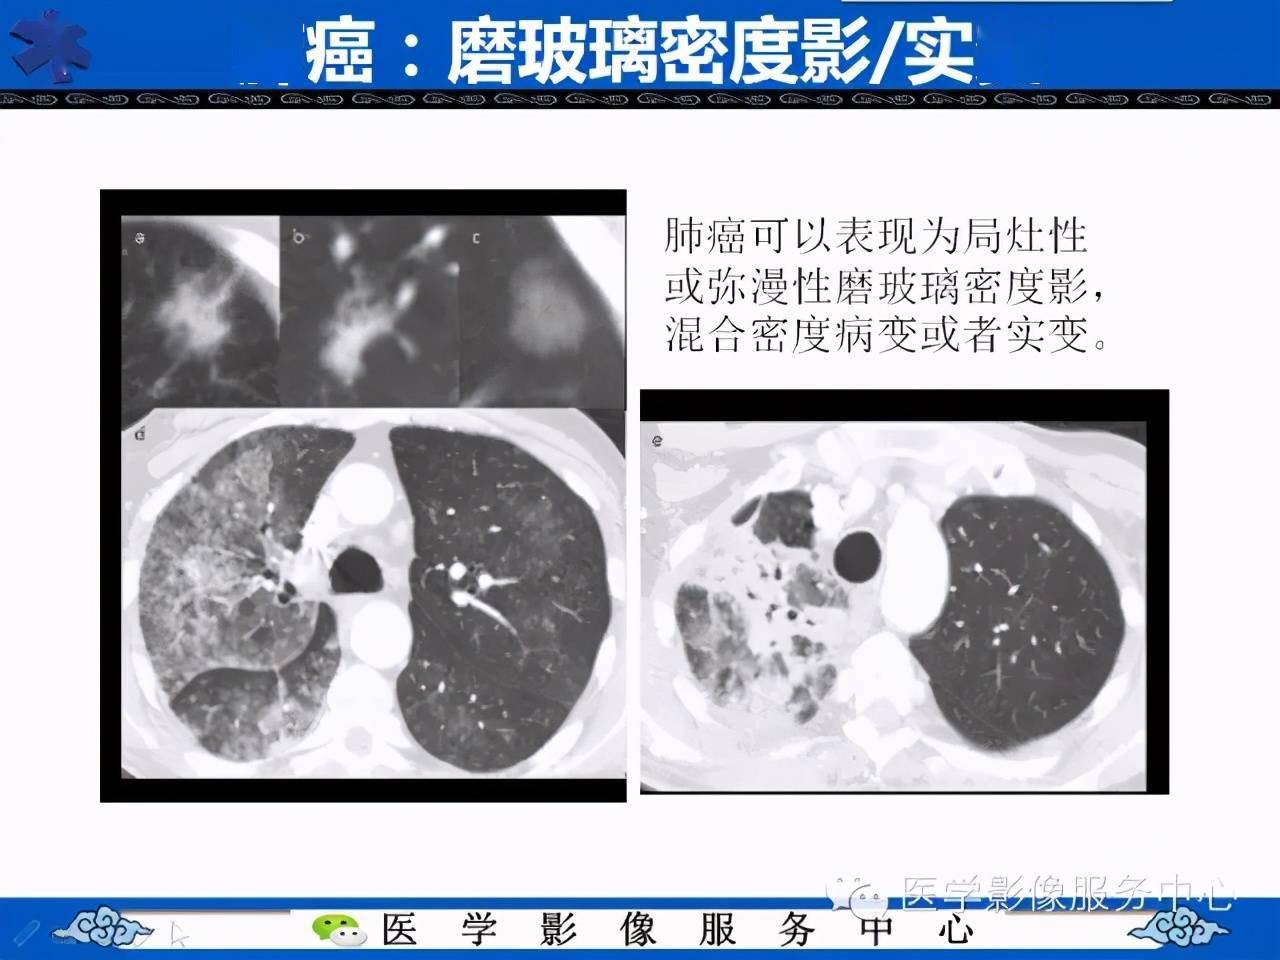 肺癌的影像学鉴别诊断实例:哪些不是肺癌